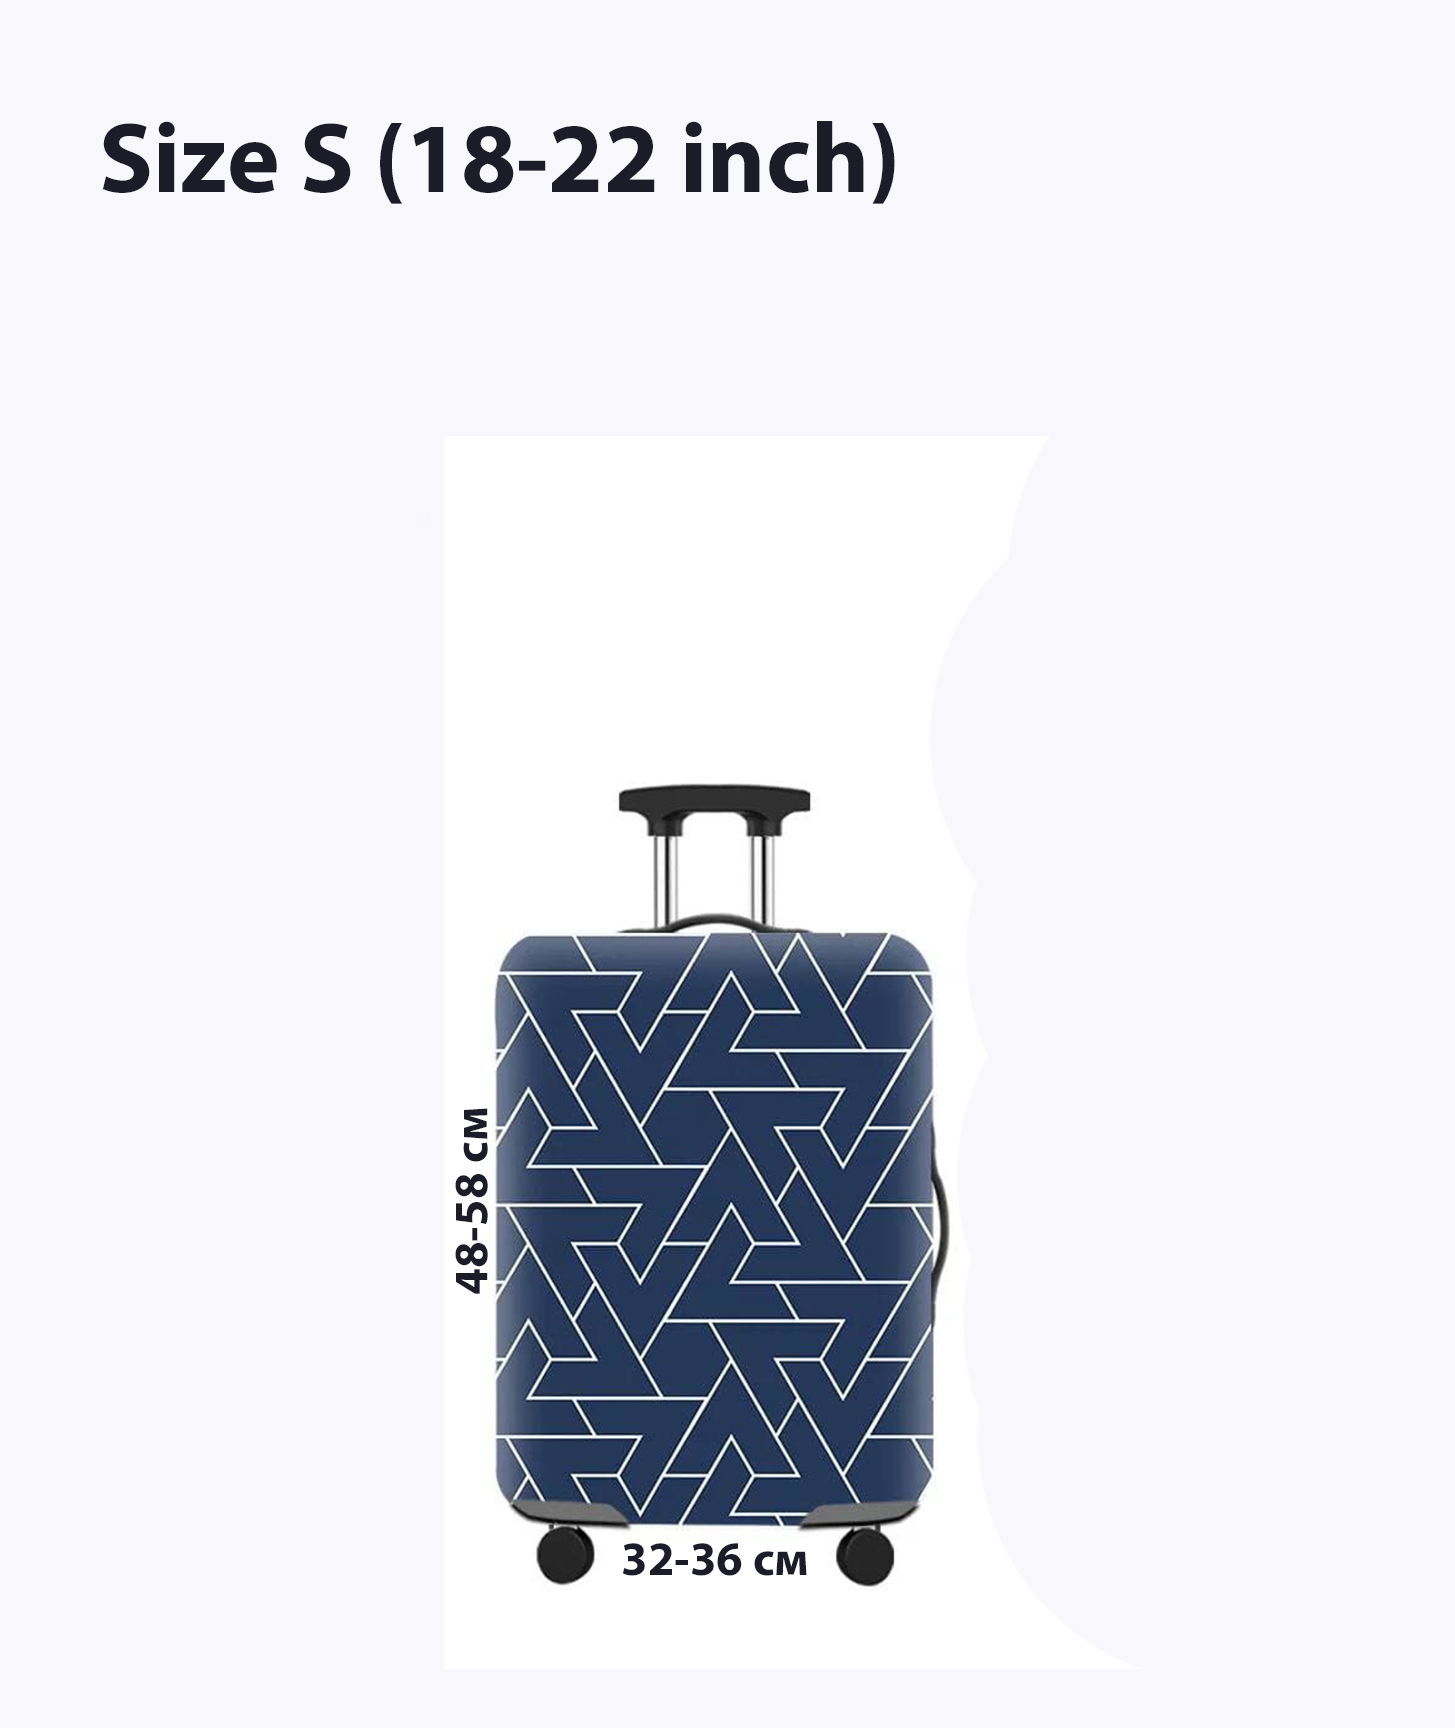 Чехол для чемоданов. Размер: S (18-22 inch)